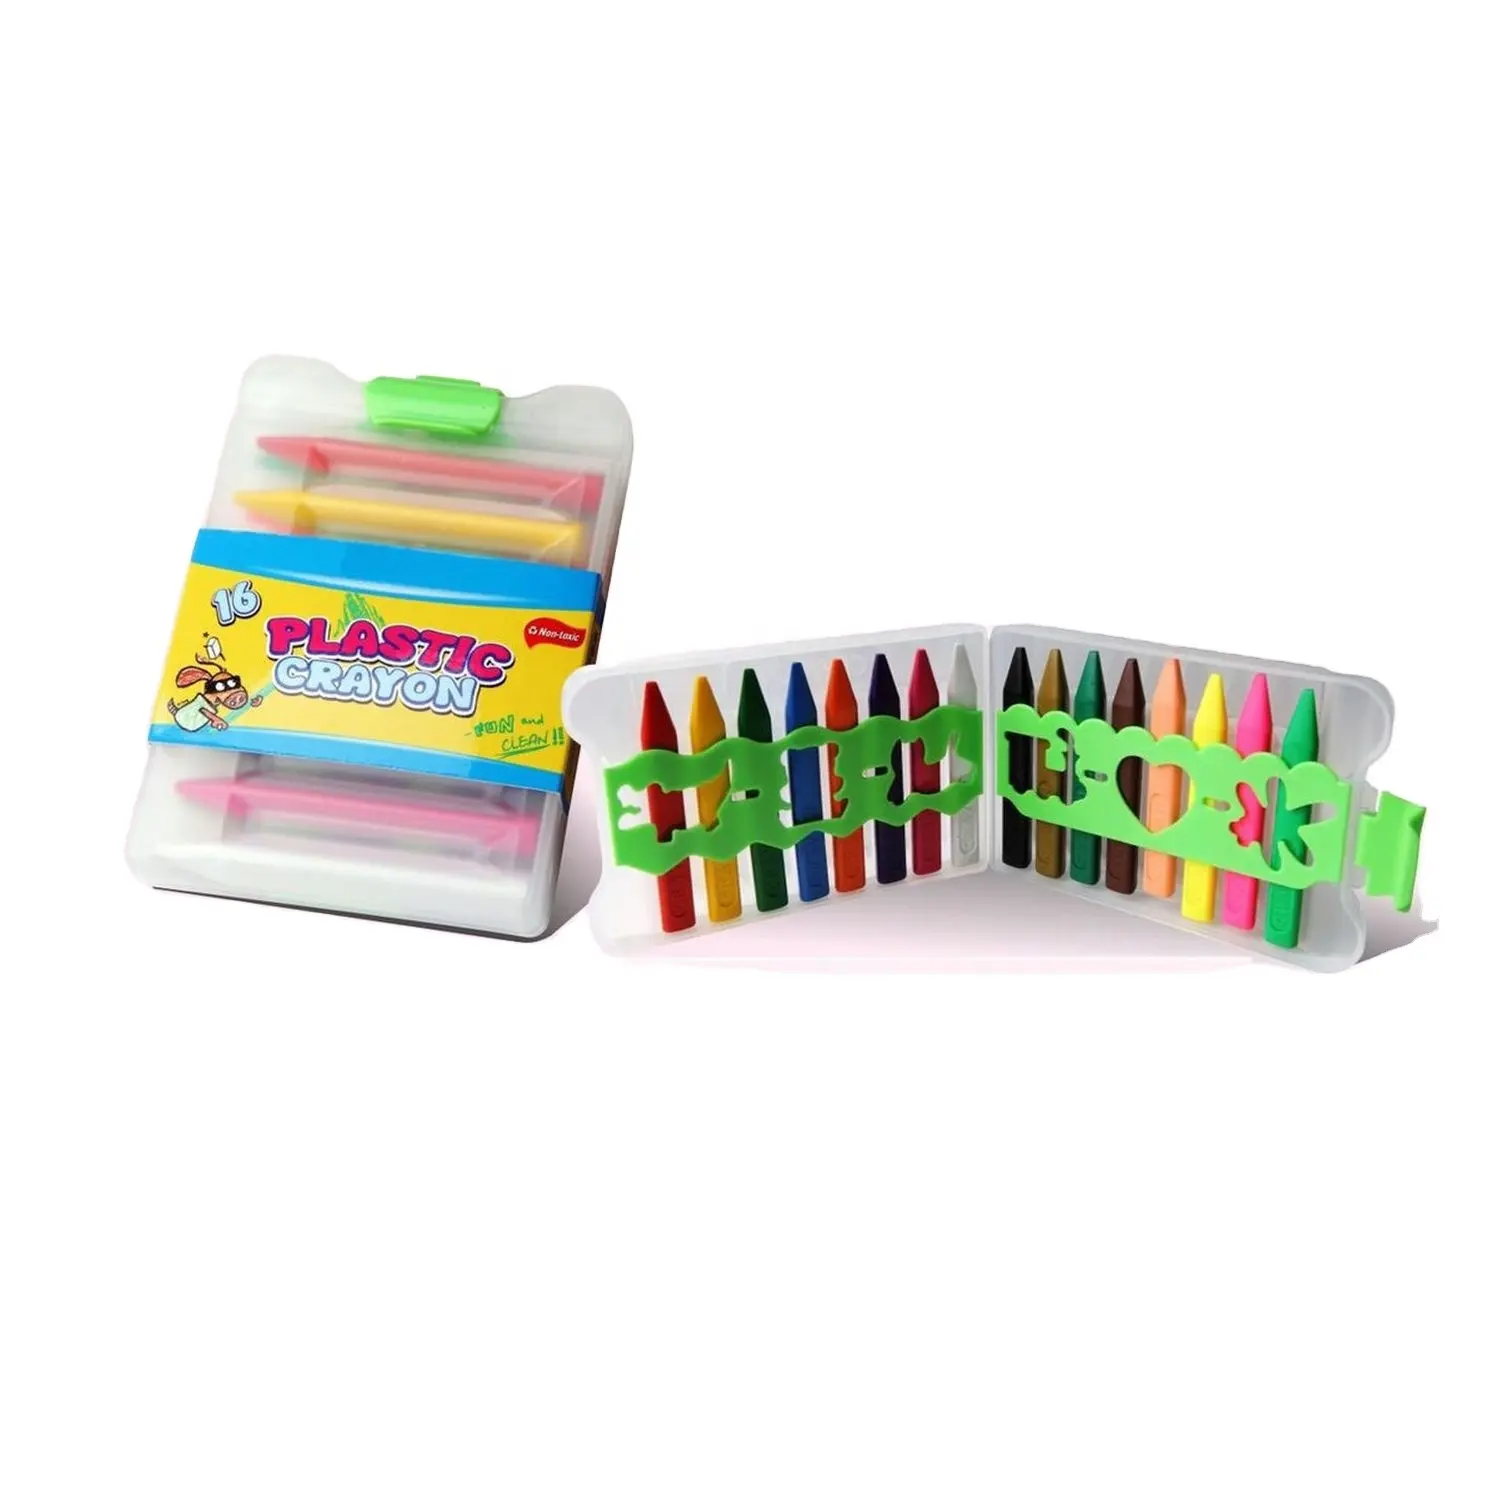 Оптовая продажа, дешевые нетоксичные пластиковые карандаши, набор карандашей 6, 8, 12, 16, 20, 24 цвета, карандаши для воска Jumbo для детей, набор карандашей для детей